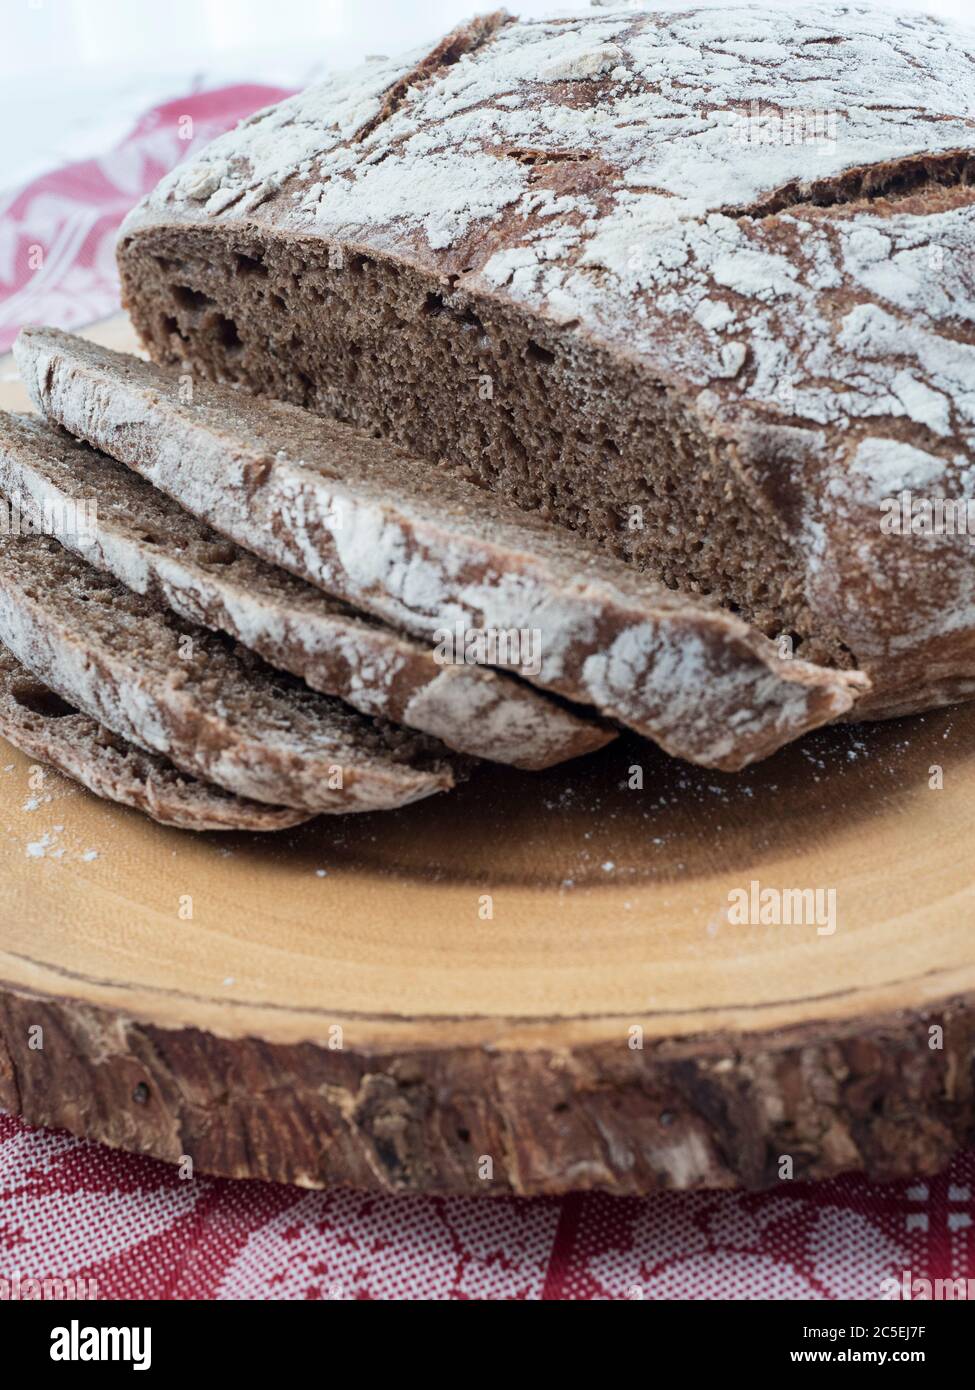 Un pain de pain de pumpernickel frais cuit au four se trouve sur une planche à pain en bois, avec des tranches coupées montrant la texture intérieure Banque D'Images